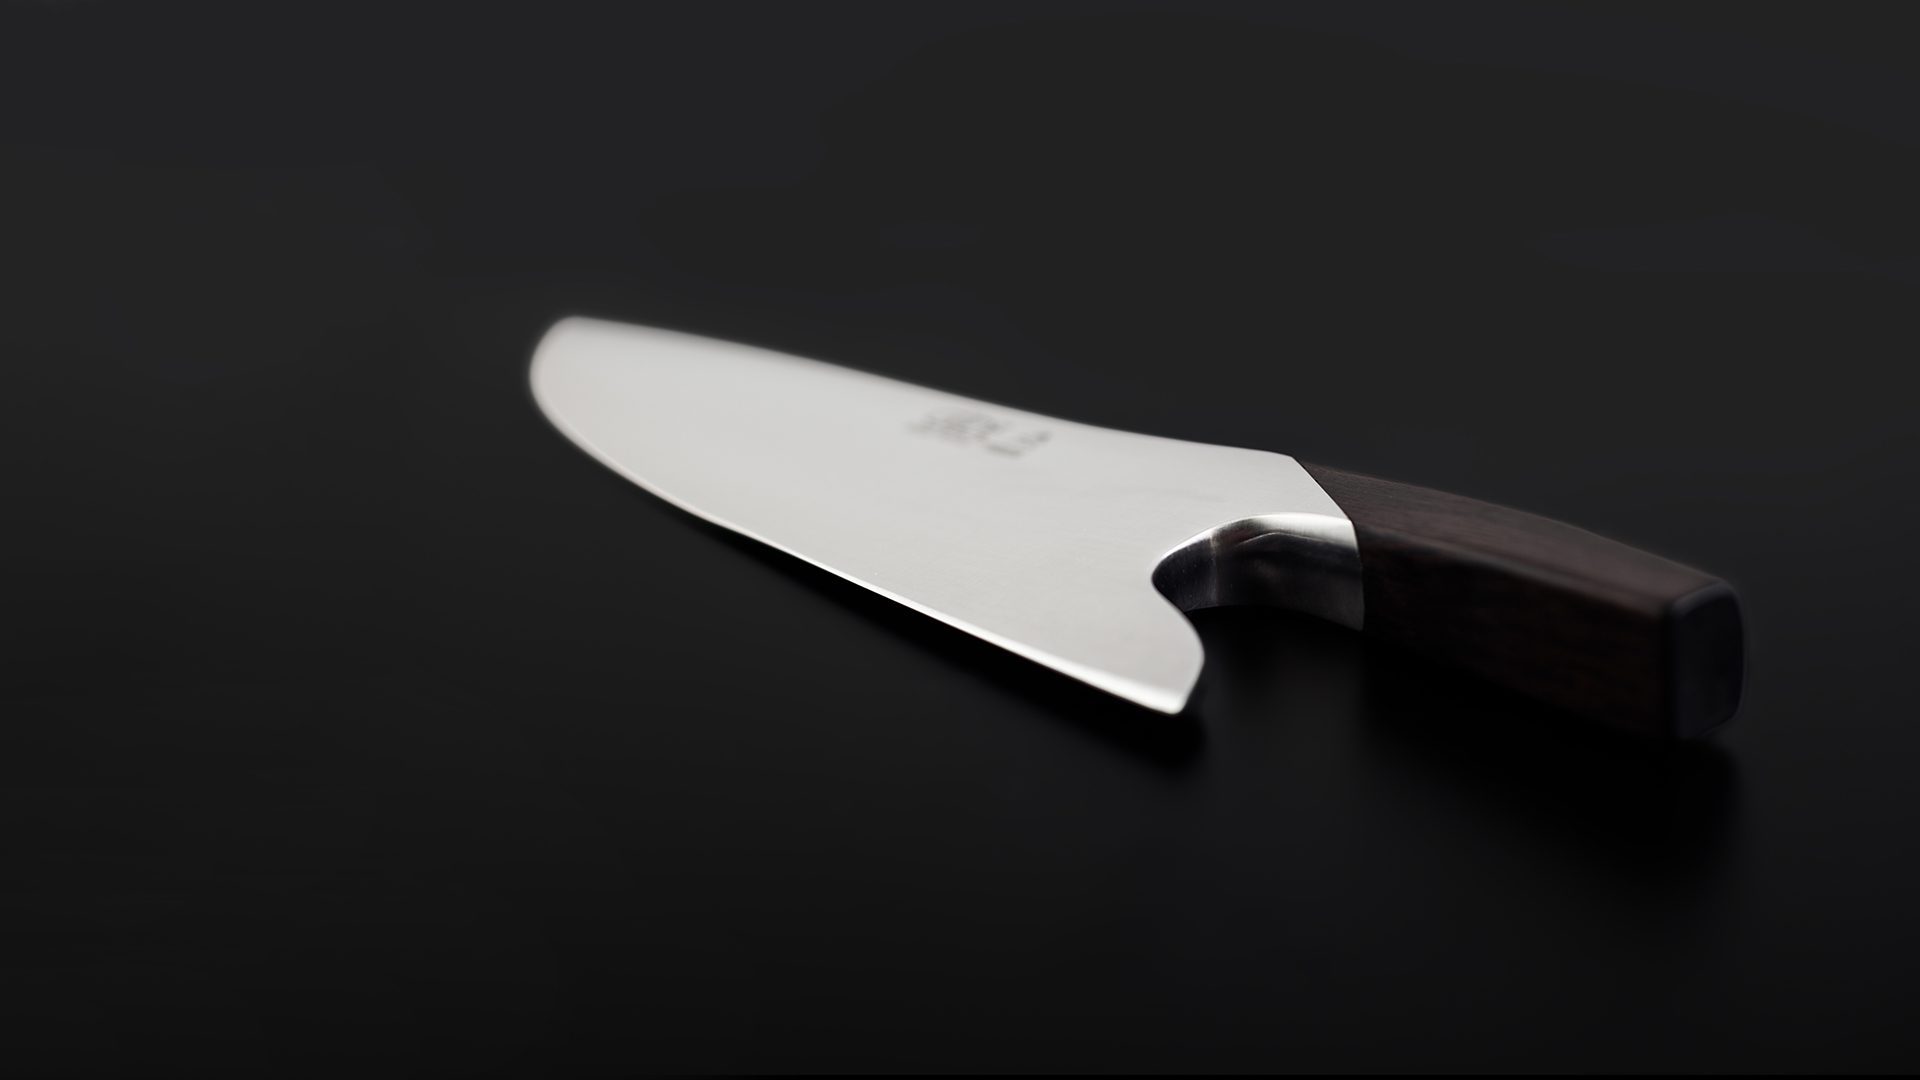 Couteaux Solingen, Güde couteaux, couteaux de chef Solingen, set de couteaux, acier à aiguiser, couteaux solinger